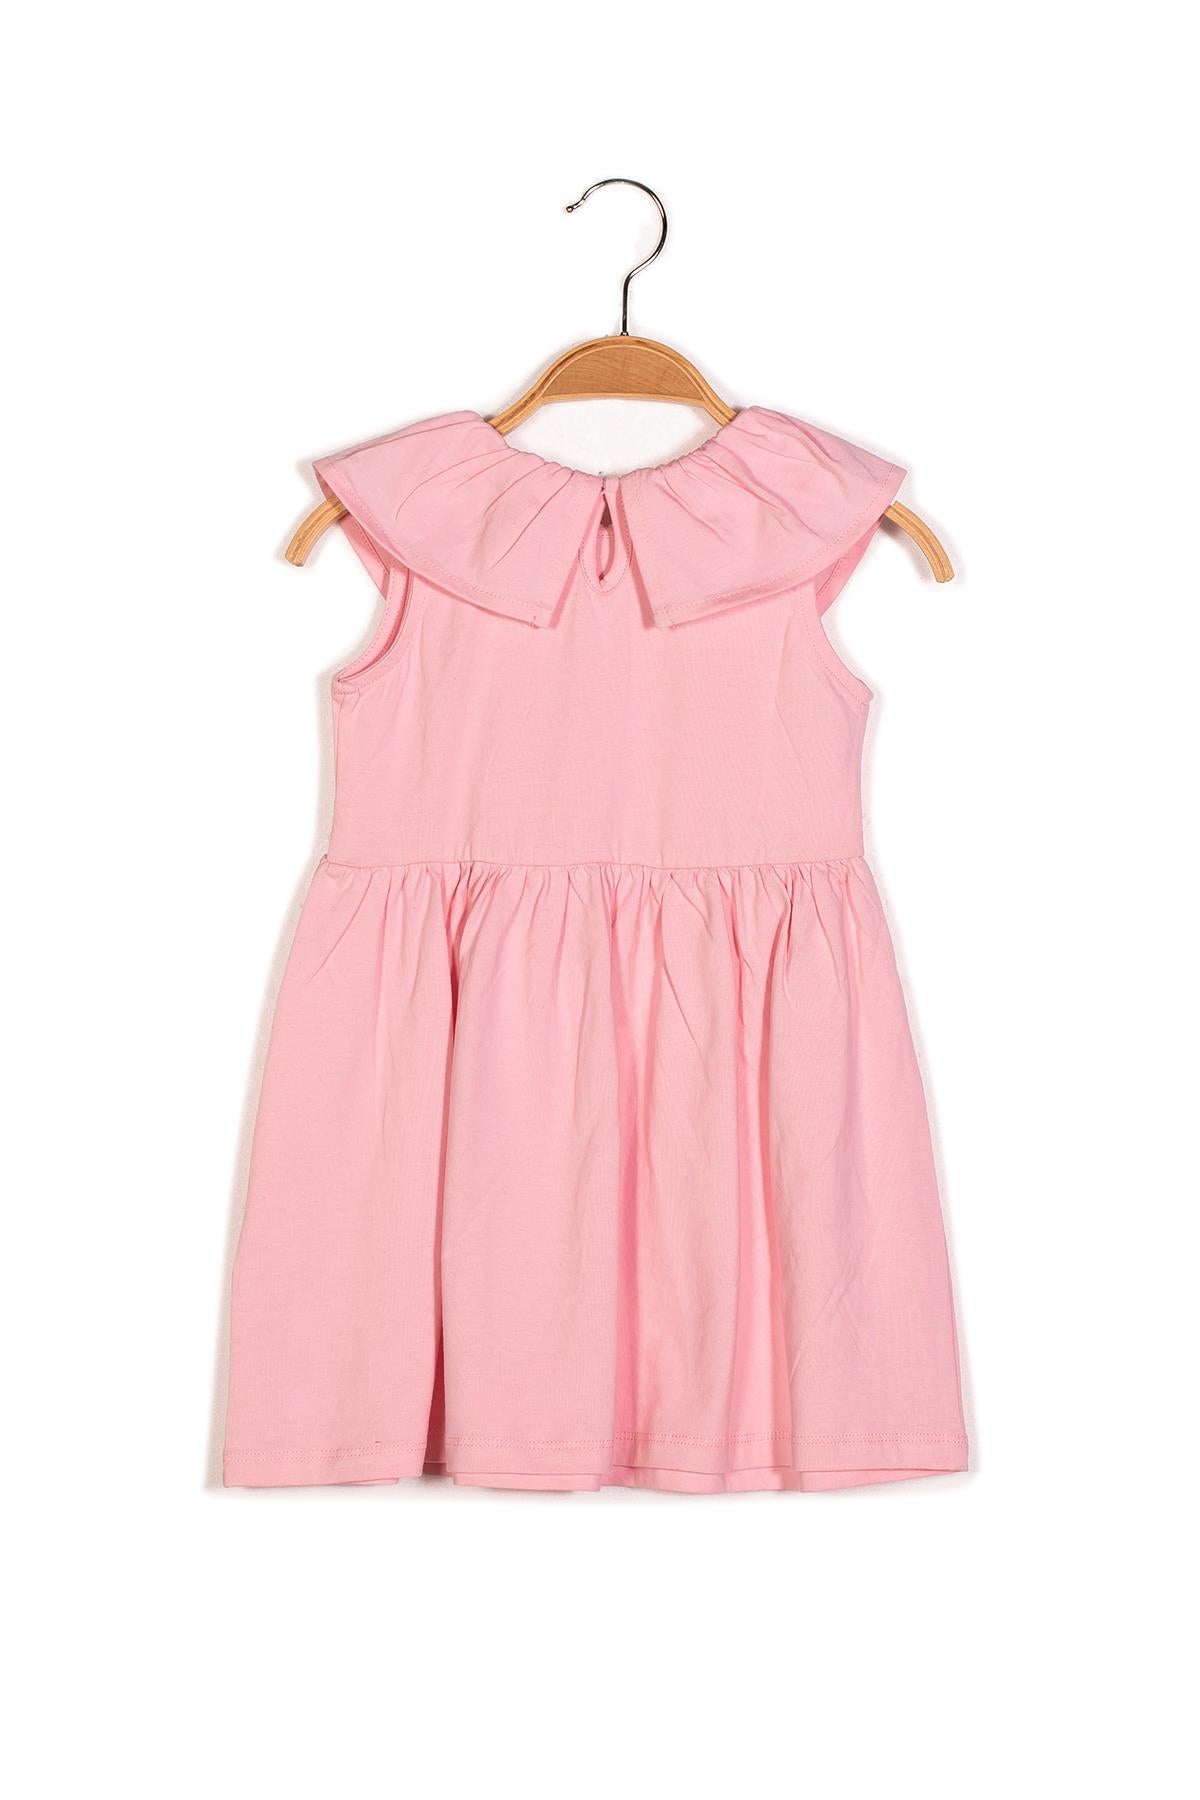 Kız Çocuk Yakası Fırfırlı Örme Elbise-1